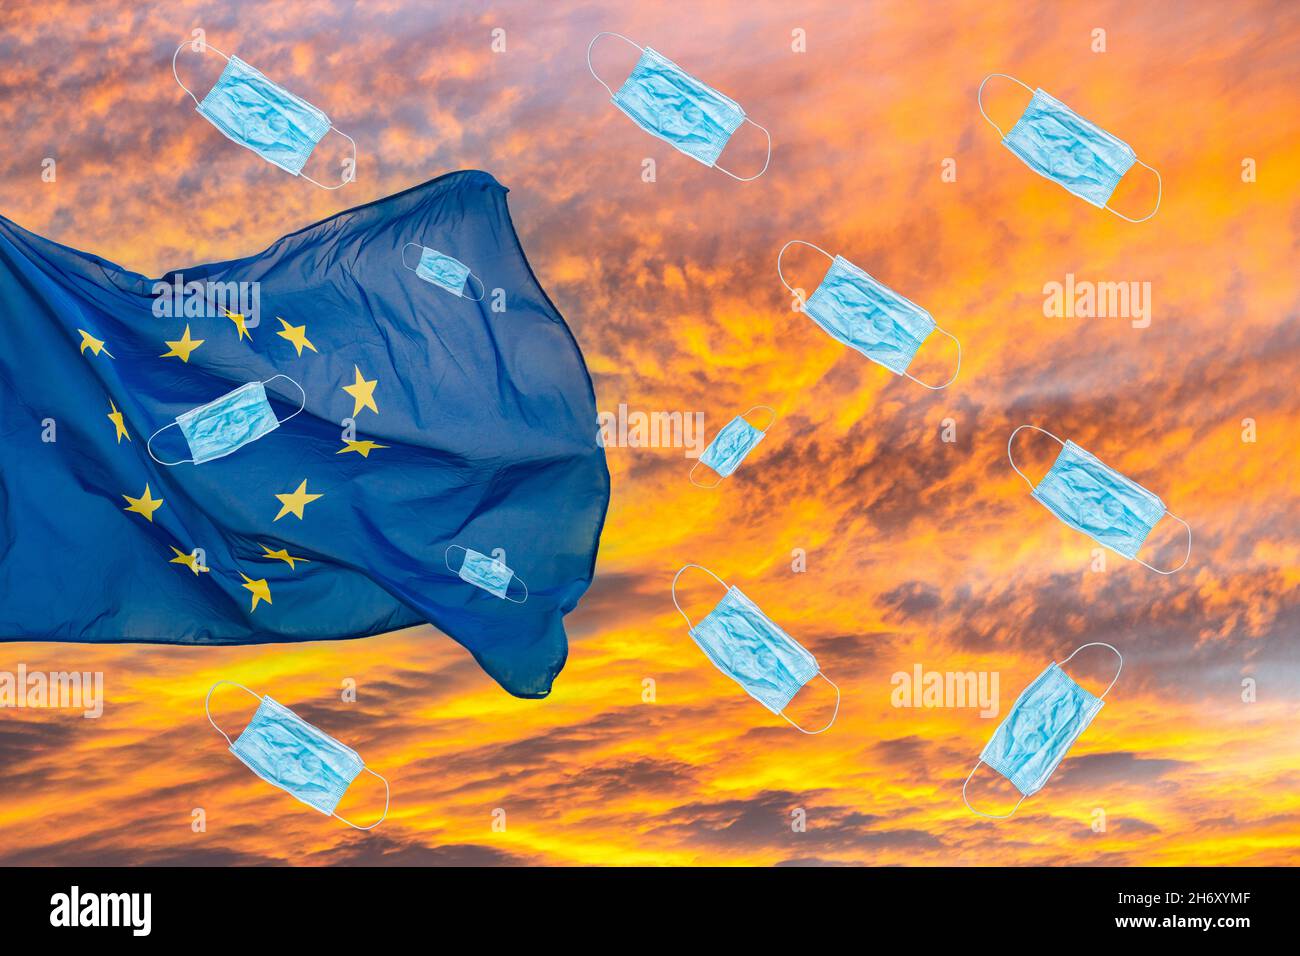 UE, drapeau de l'Union européenne contre le ciel du coucher du soleil avec des masques faciaux Covid/coronavirus tombant du ciel.Montée des cas Covid en Allemagne..., concept européen Banque D'Images